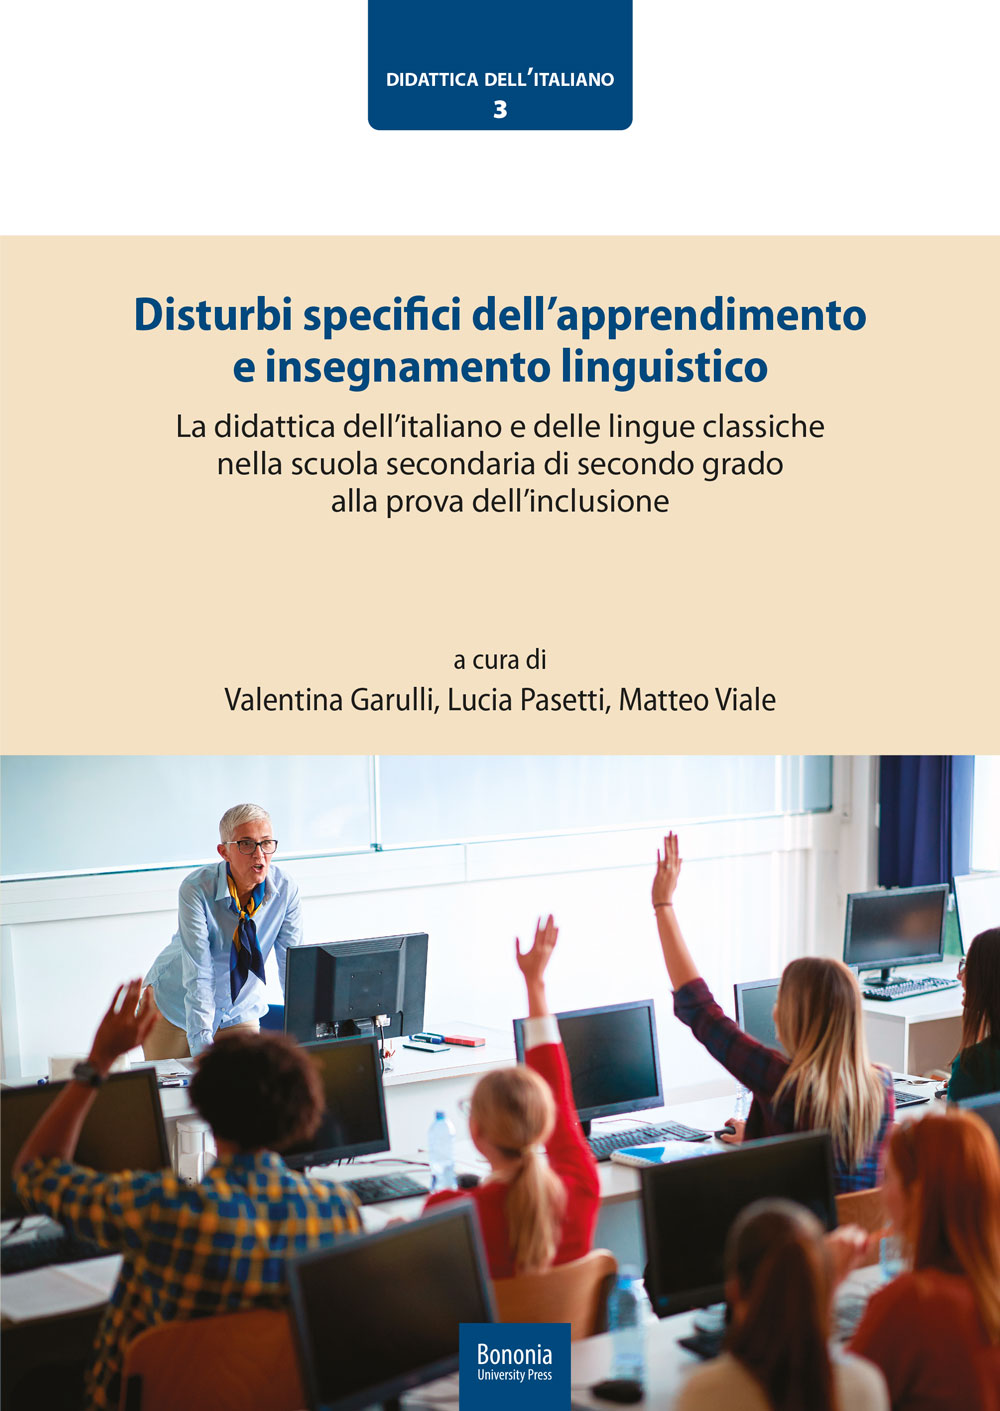 Disturbi specifici dell’apprendimento e insegnamento linguistico - Bologna University Press